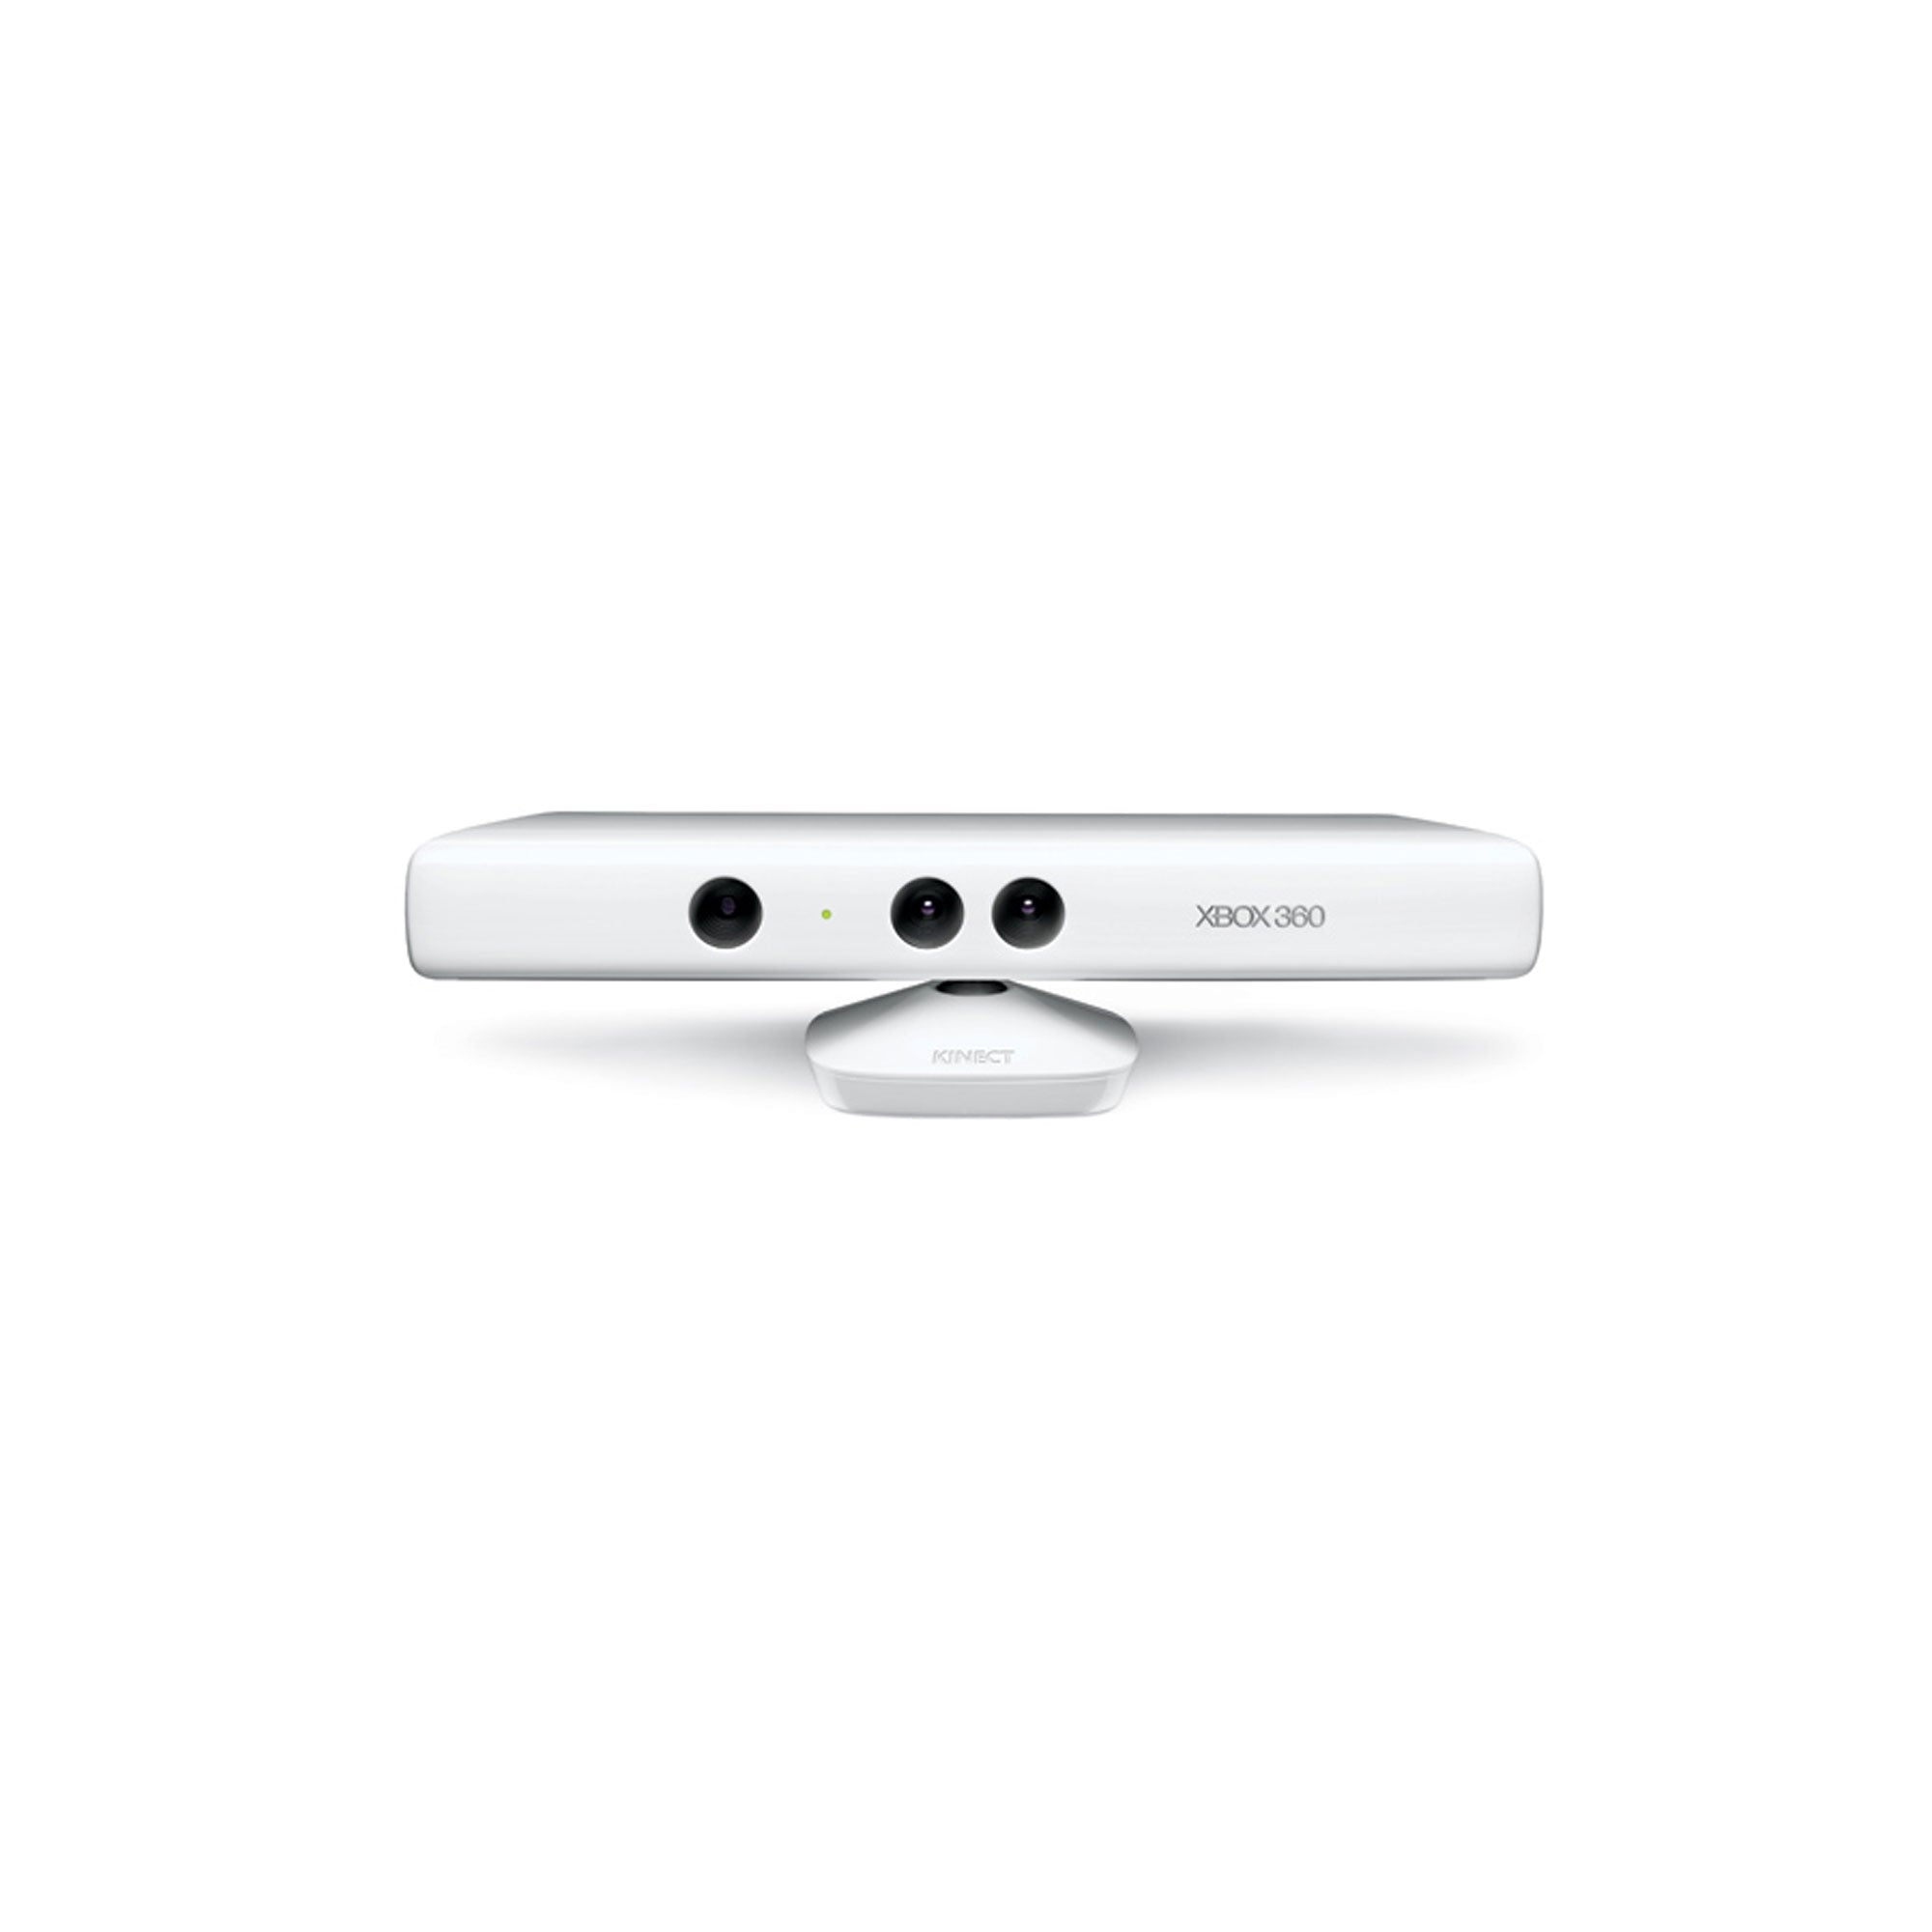 Microsoft Xbox 360 Kinect Sensor Bar